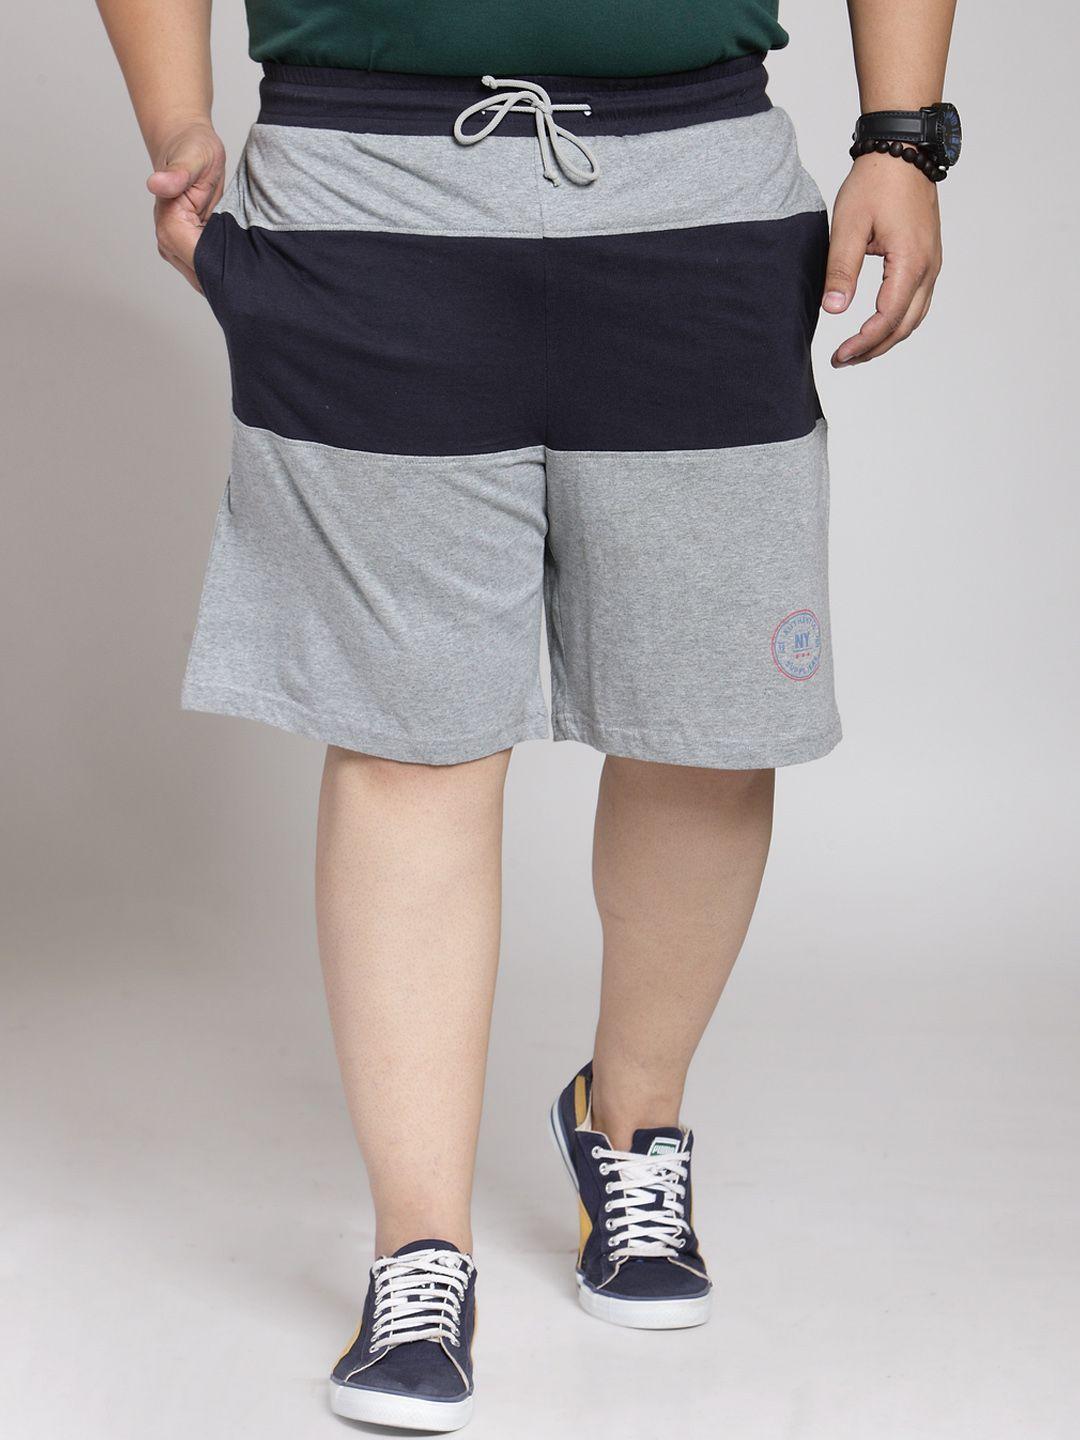 pluss men grey & navy blue colourblocked slim fit regular shorts